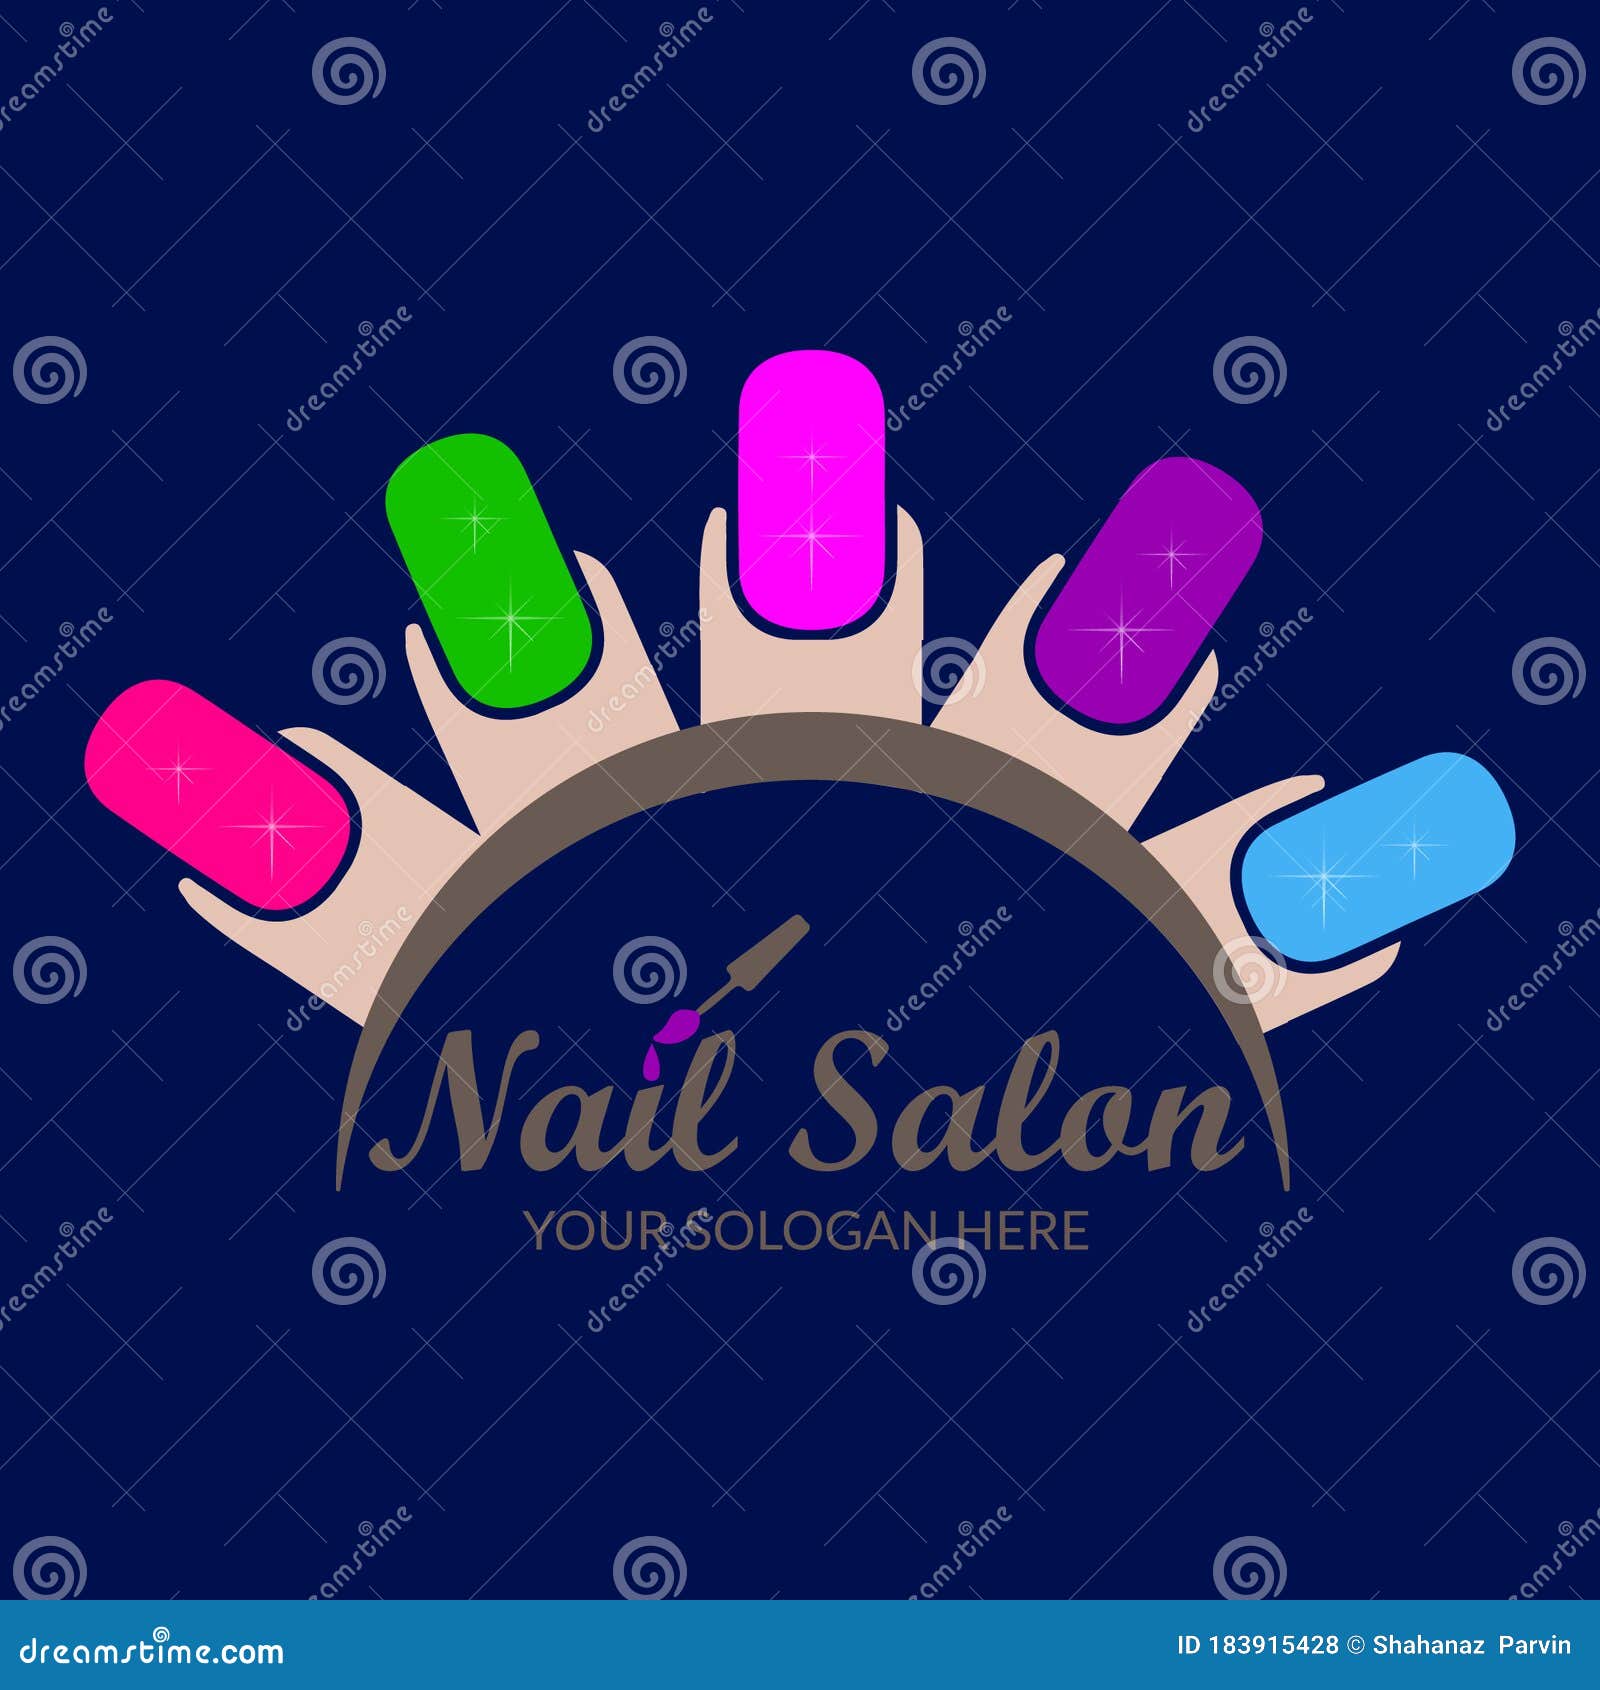 Create Your Own Nail Salon Logo Design Free with nails Logo maker | Salon logo  design, Nail logo, Logo design free